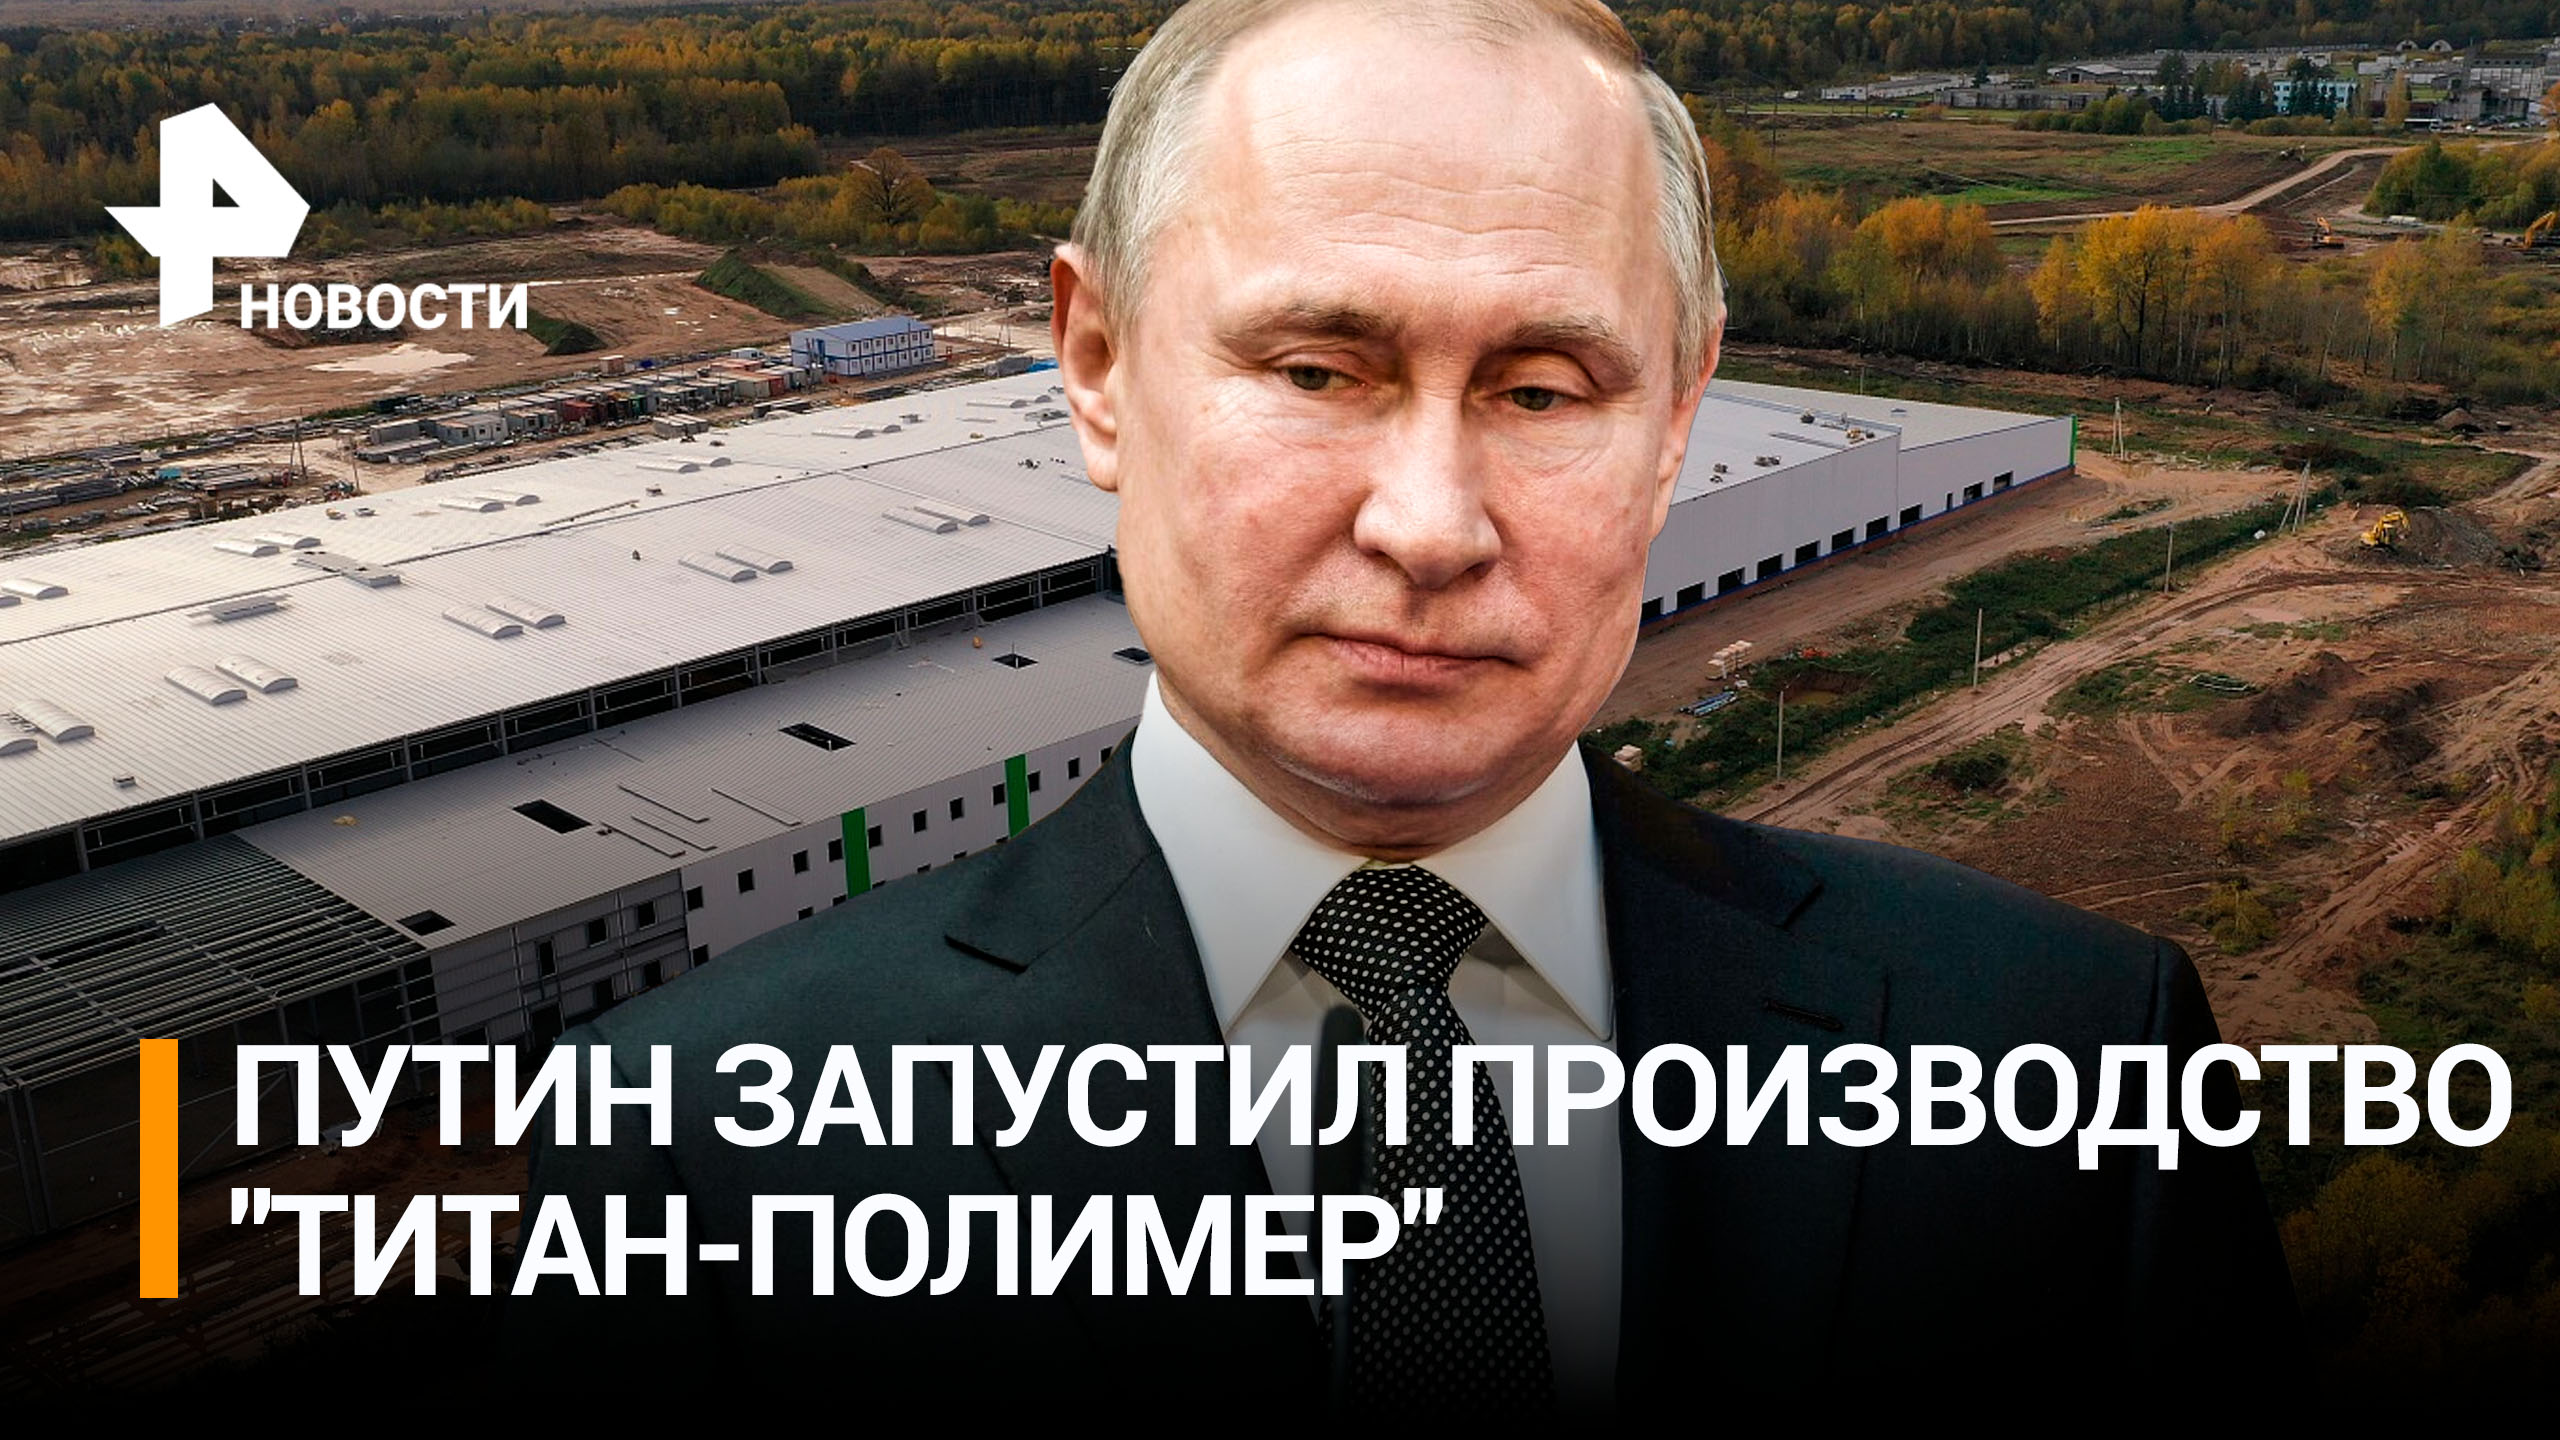 Путин запустил производство на псковском заводе "Титан-Полимер" / РЕН Новости